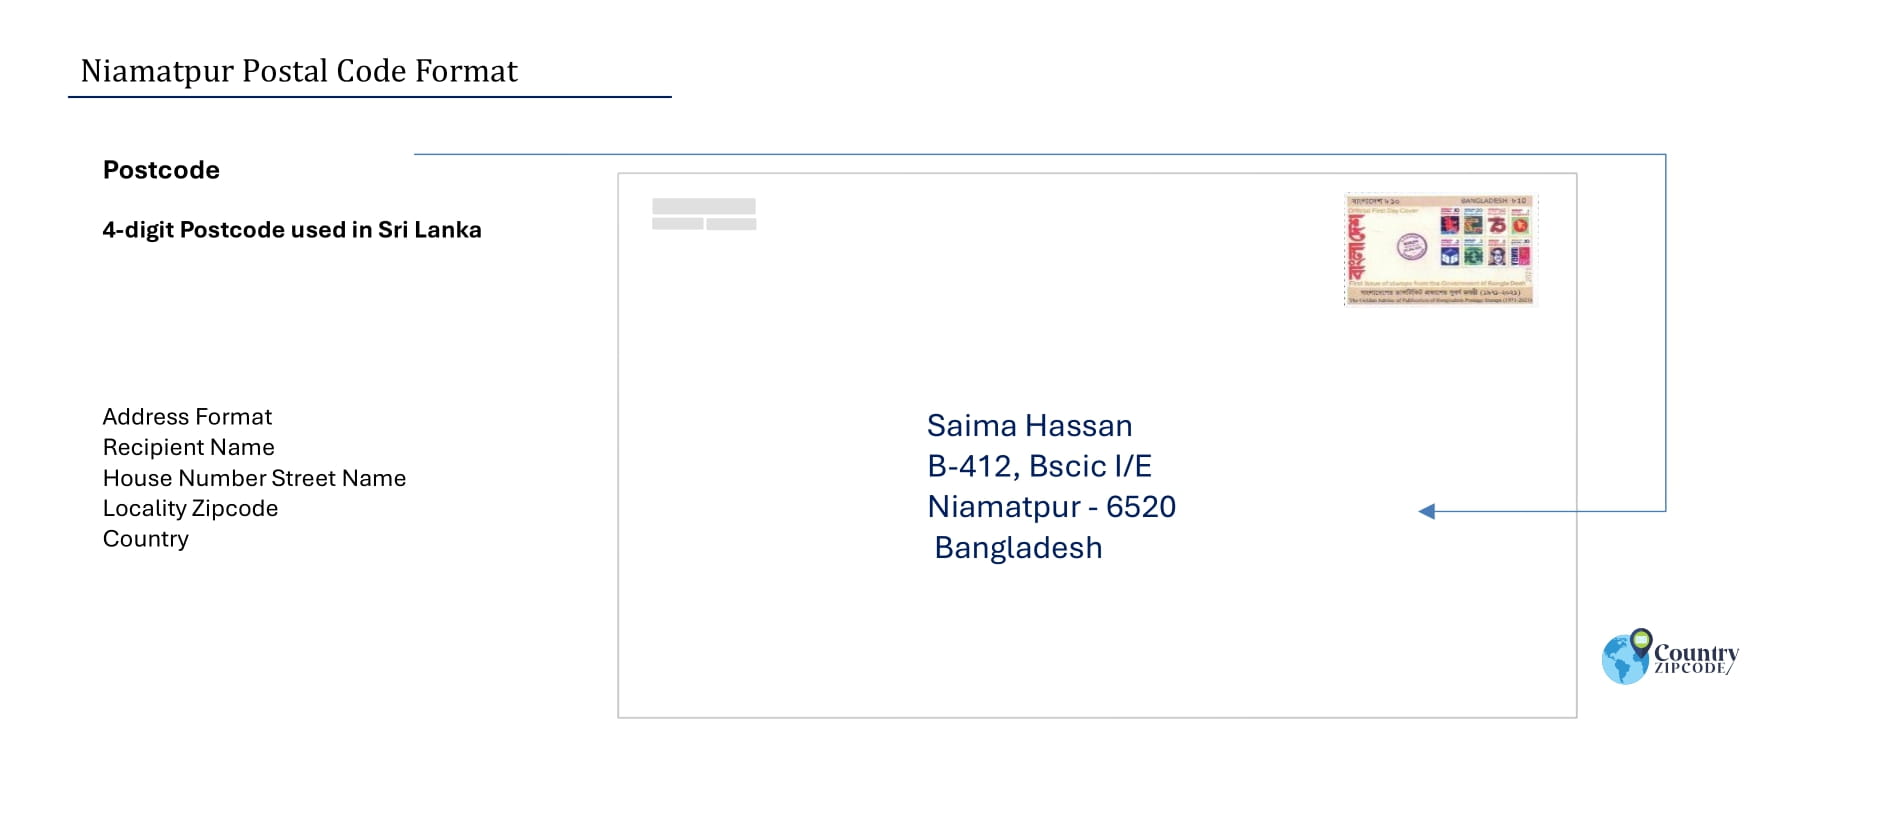 Niamatpur Postal code format